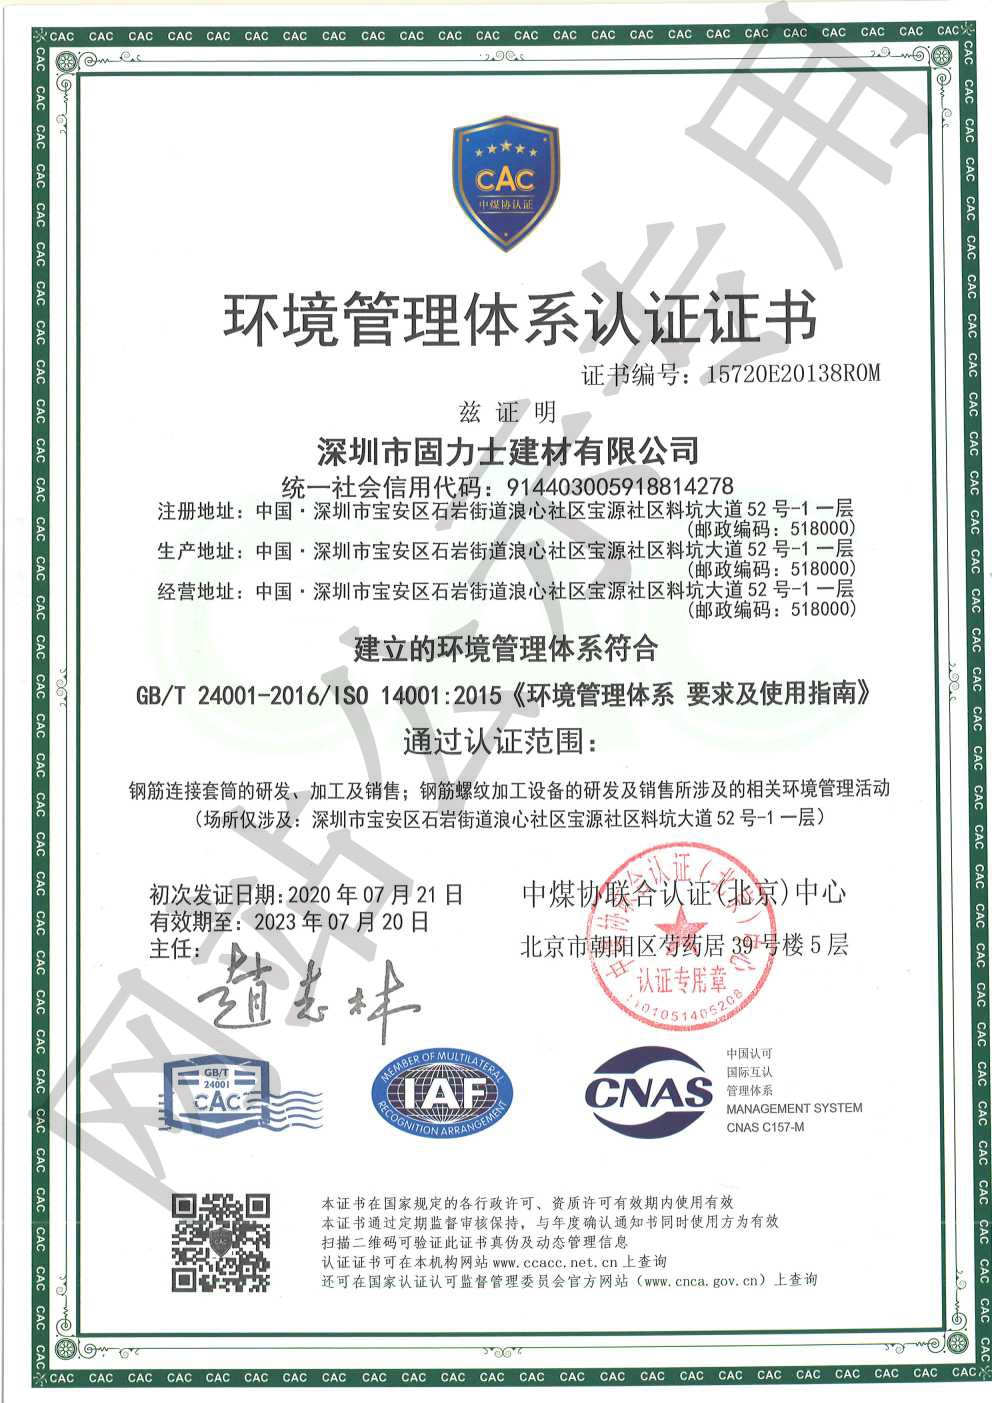 婺源ISO14001证书